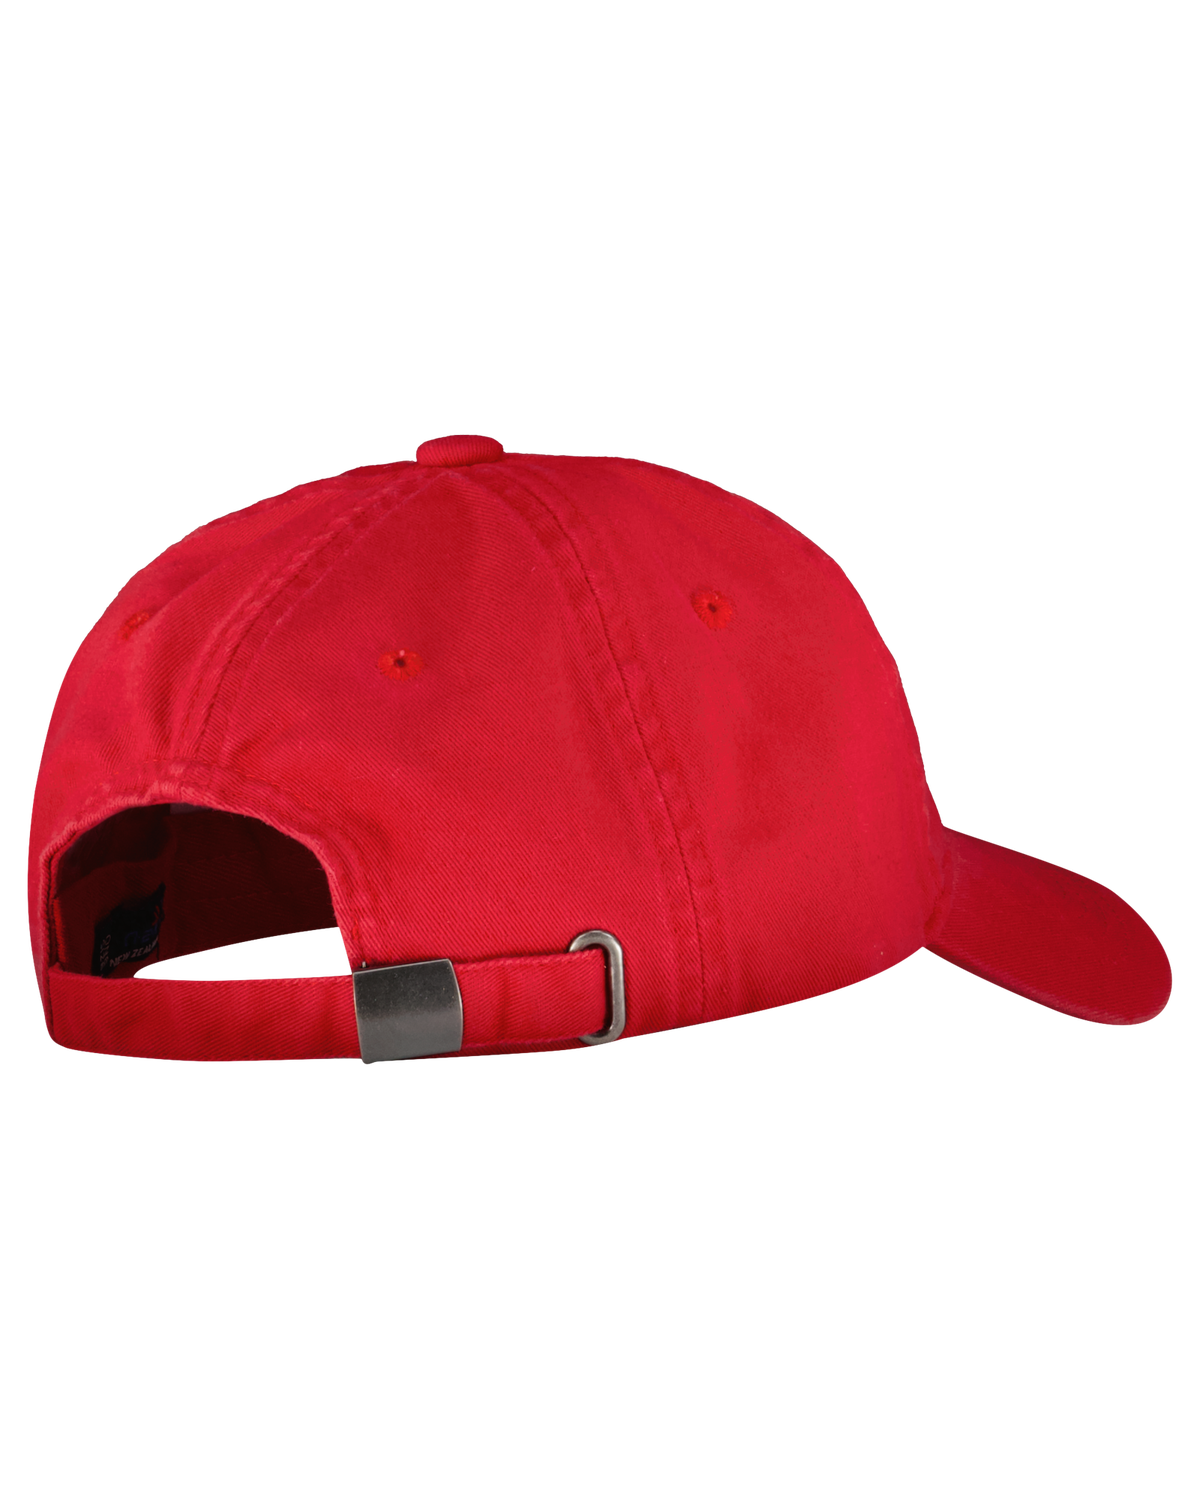 Cotton cap - Carmine red